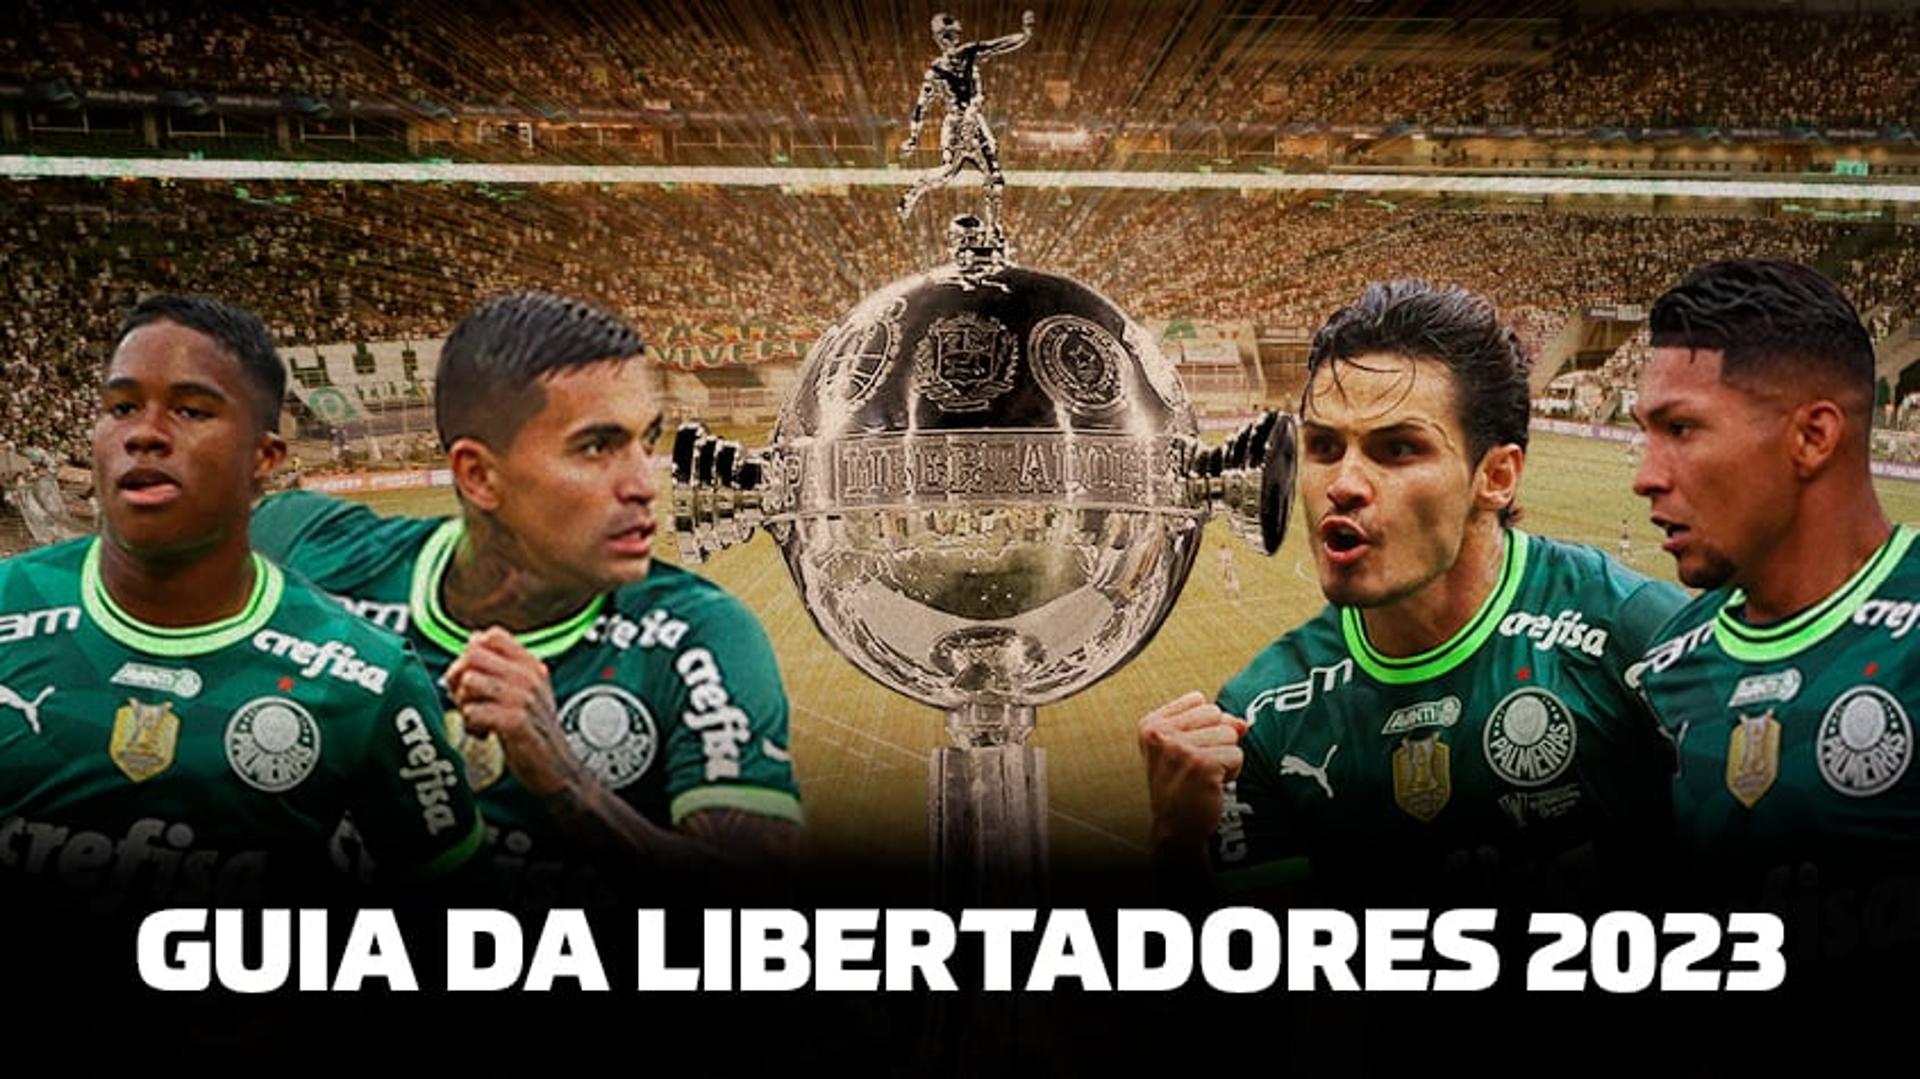 Guia Libertadores Palmeiras 2023